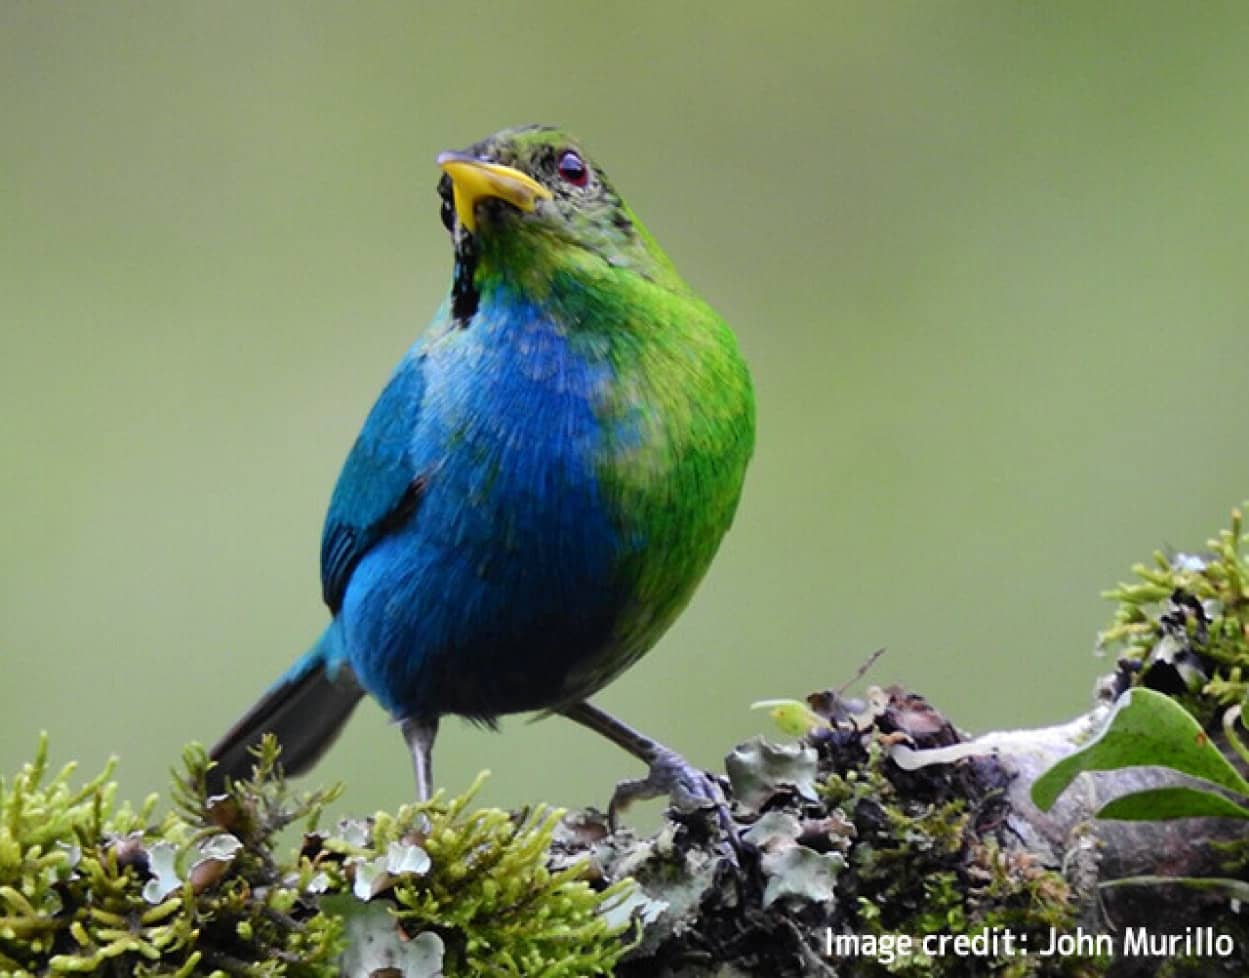 半分青で半分緑。半分オスで半分メス。珍しくて美しい雌雄モザイクの鳥が発見される